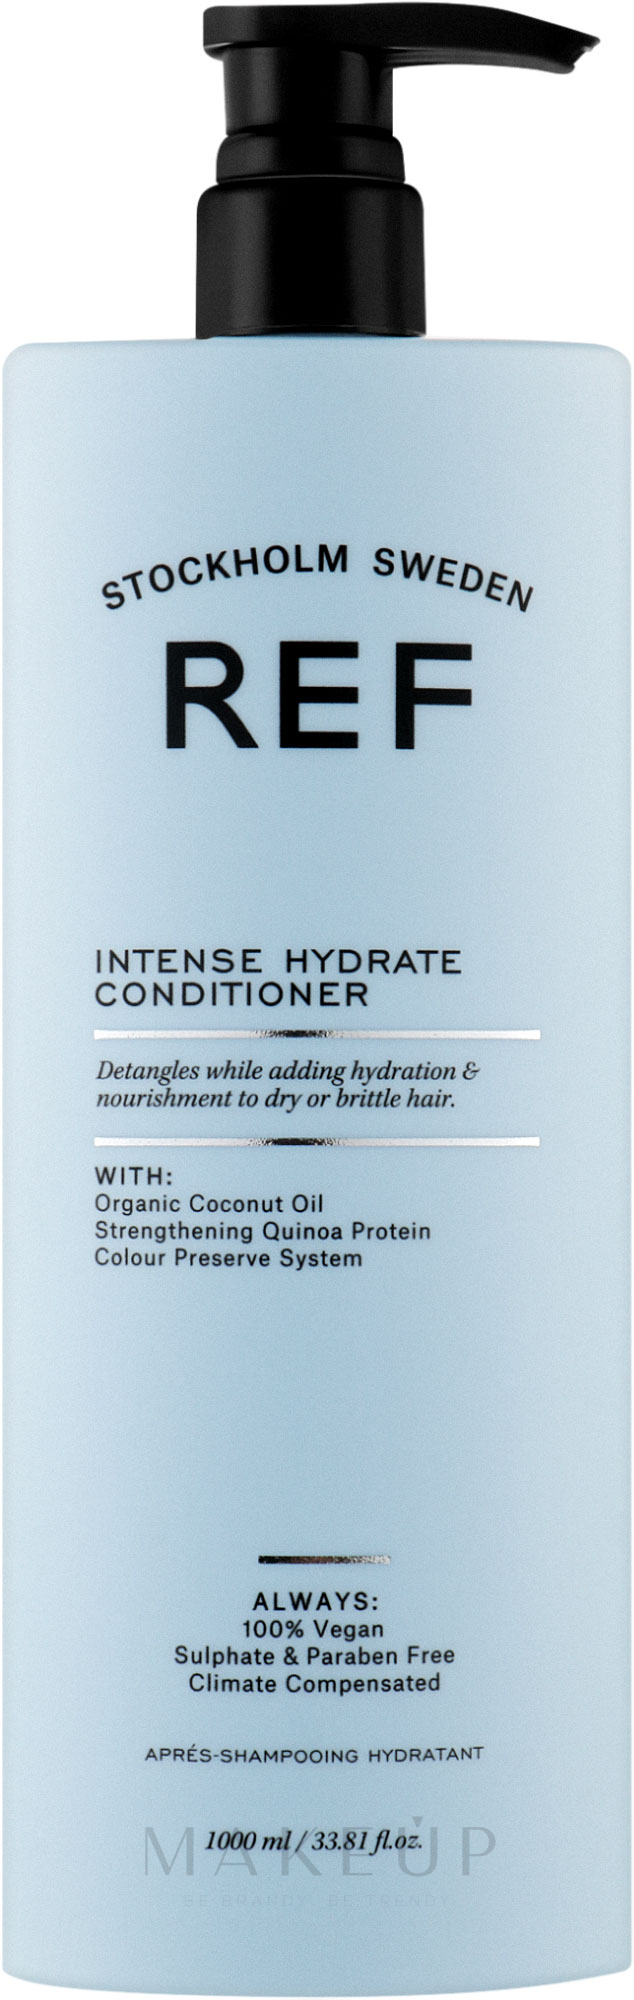 Intensiv feuchtigkeitsspendende und farbschützende Haarspülung mit Bio-Kokos- und Bergamotteöl - REF Intense Hydrate Conditioner — Bild 1000 ml